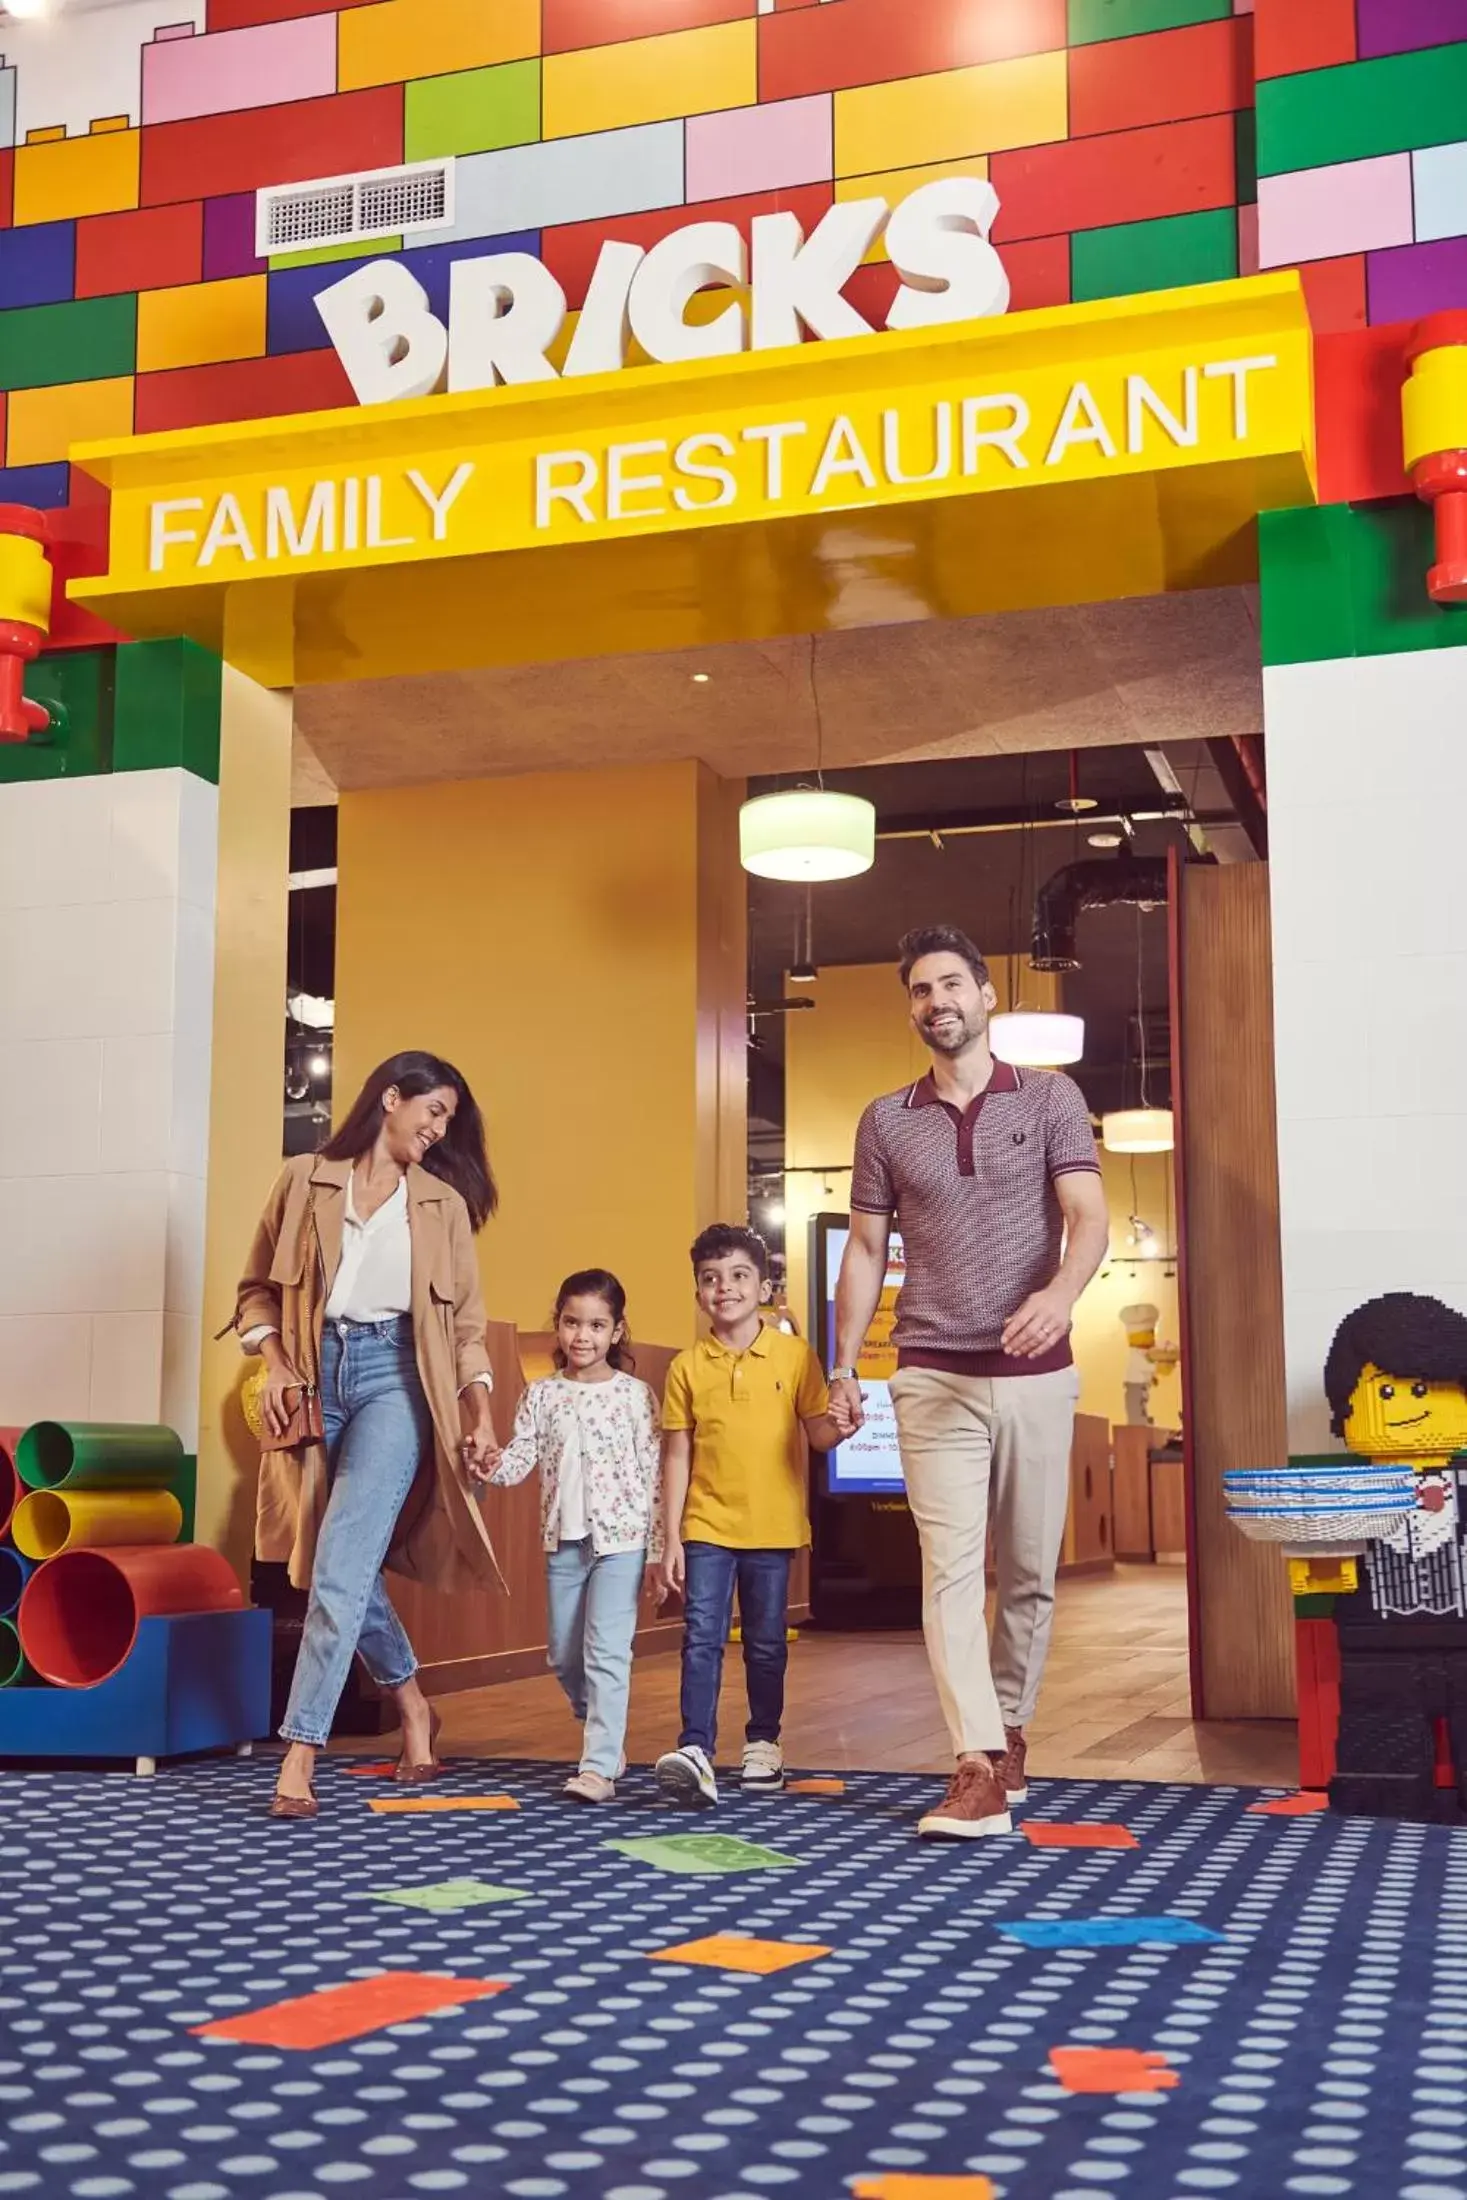 Restaurant/places to eat in LEGOLAND Hotel Dubai